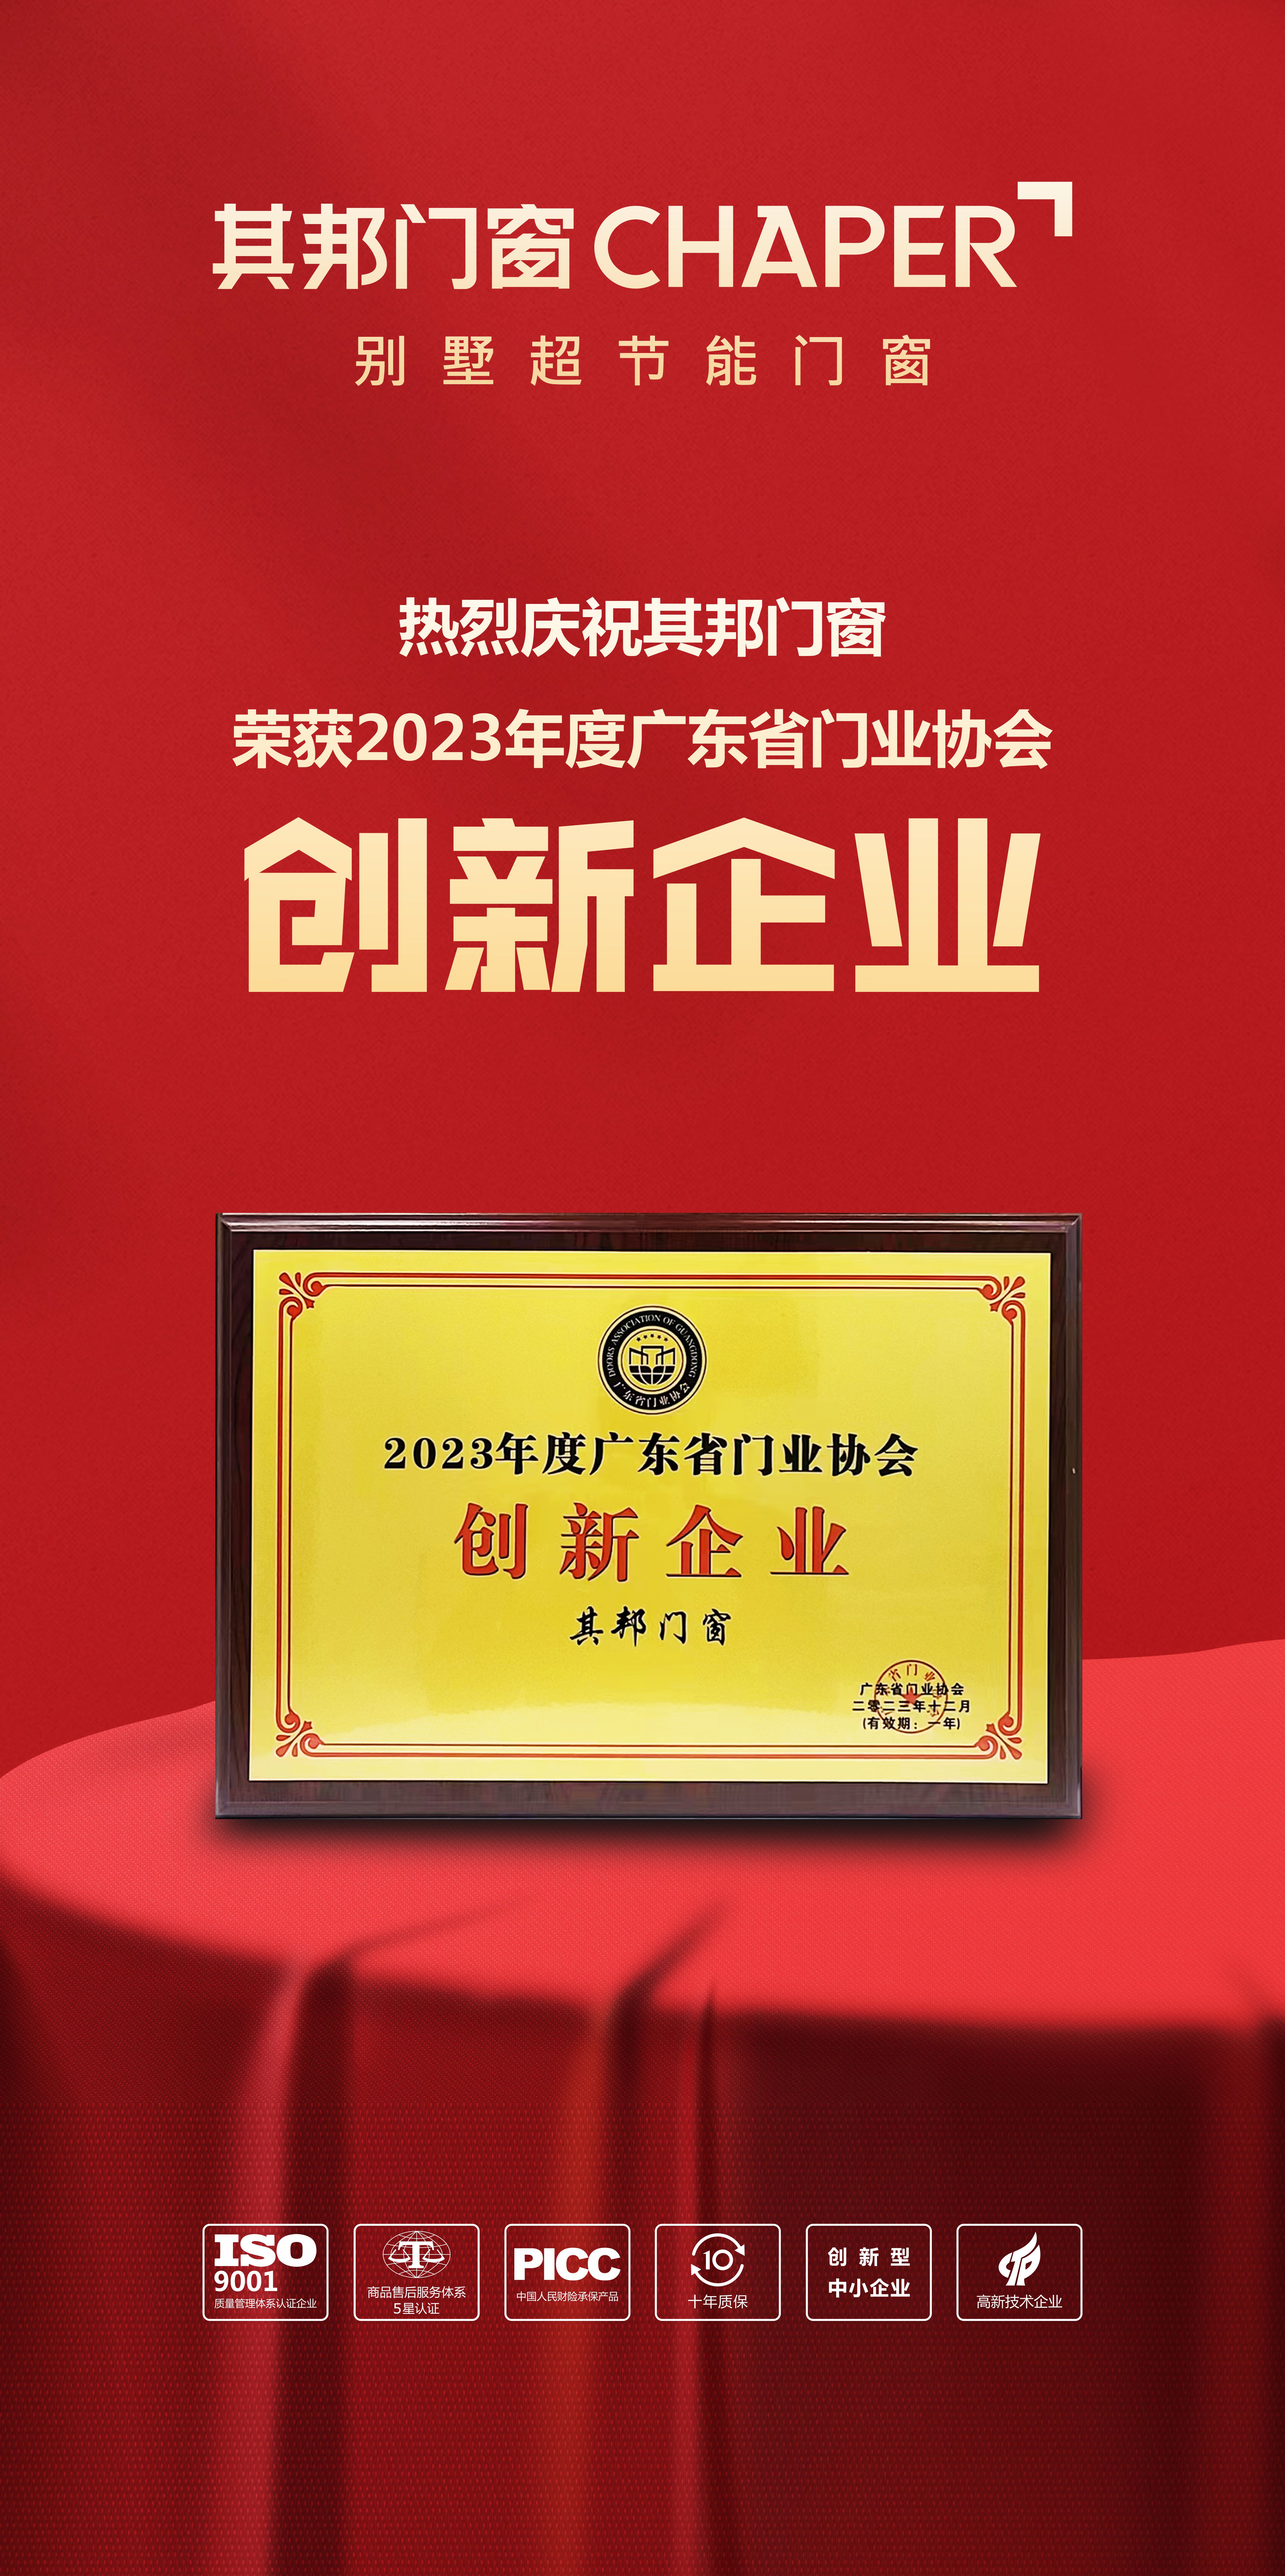 喜报丨js33333线路登录门窗荣获2023年度广东省门业协会“创新企业”称号！